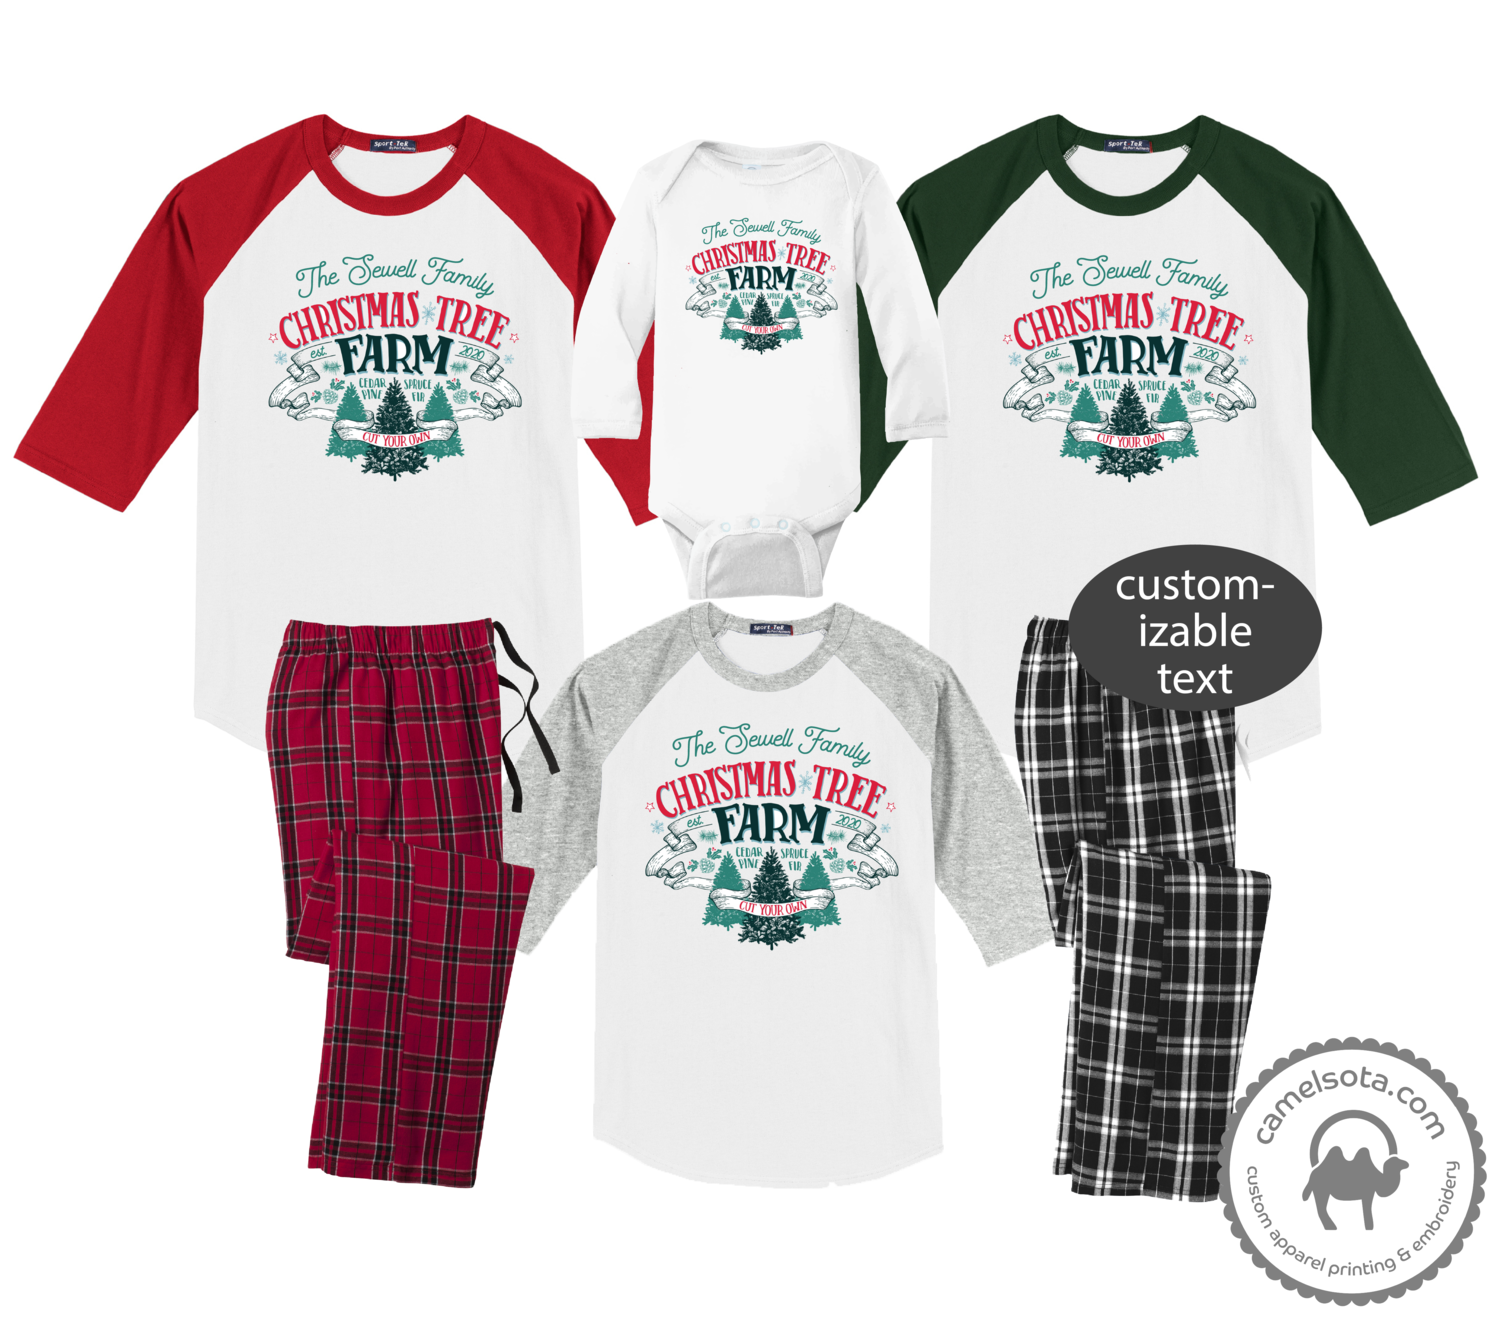 Family Coordinating Christmas Shirts and Pajama Pants - Christmas Tree Farm